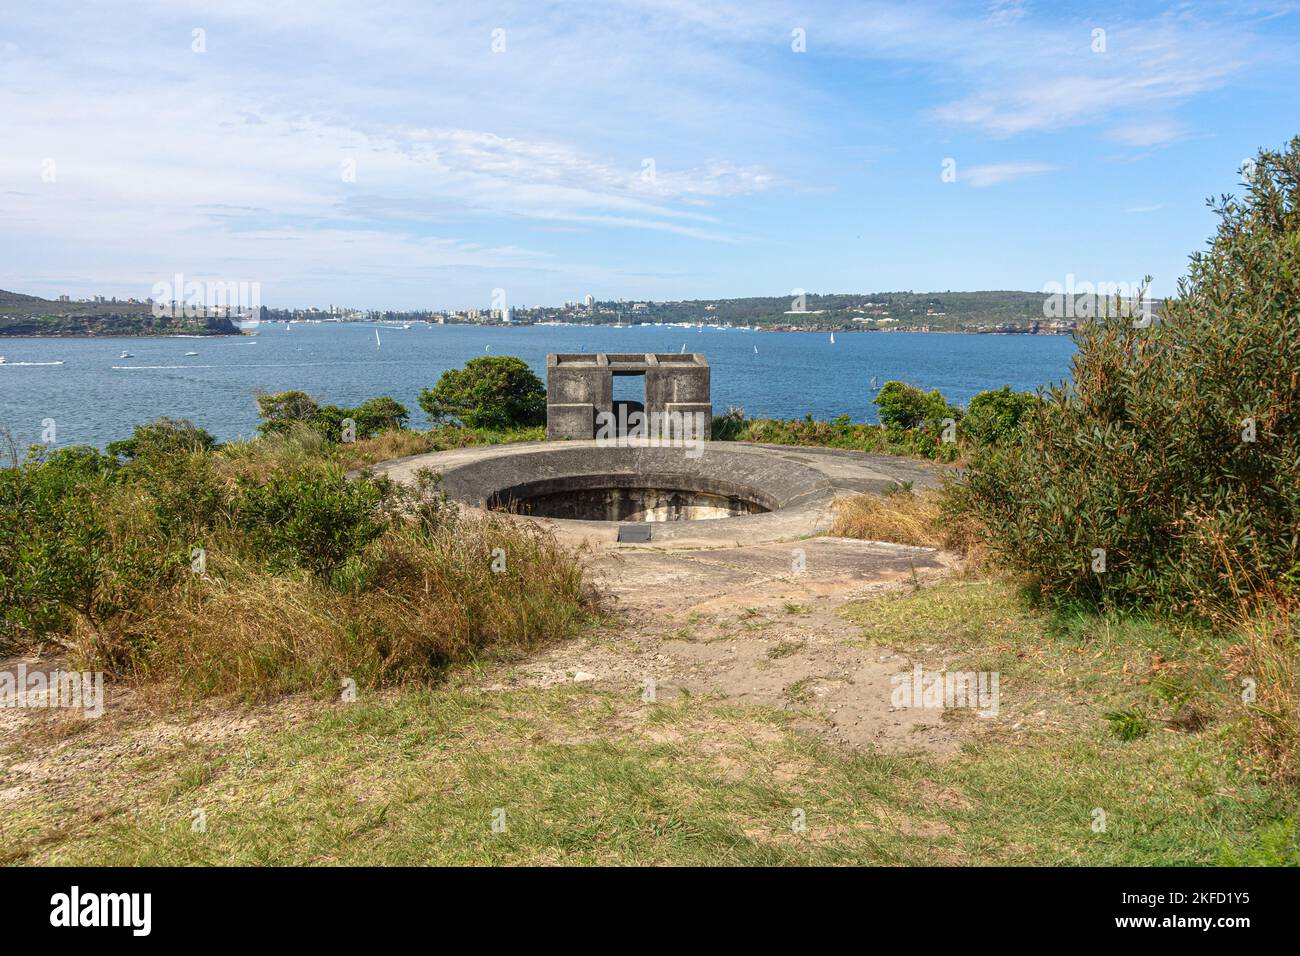 La batterie intérieure de la tête moyenne des fortifications de la tête moyenne qui surplombent le port nord de Sydney, en Australie Banque D'Images